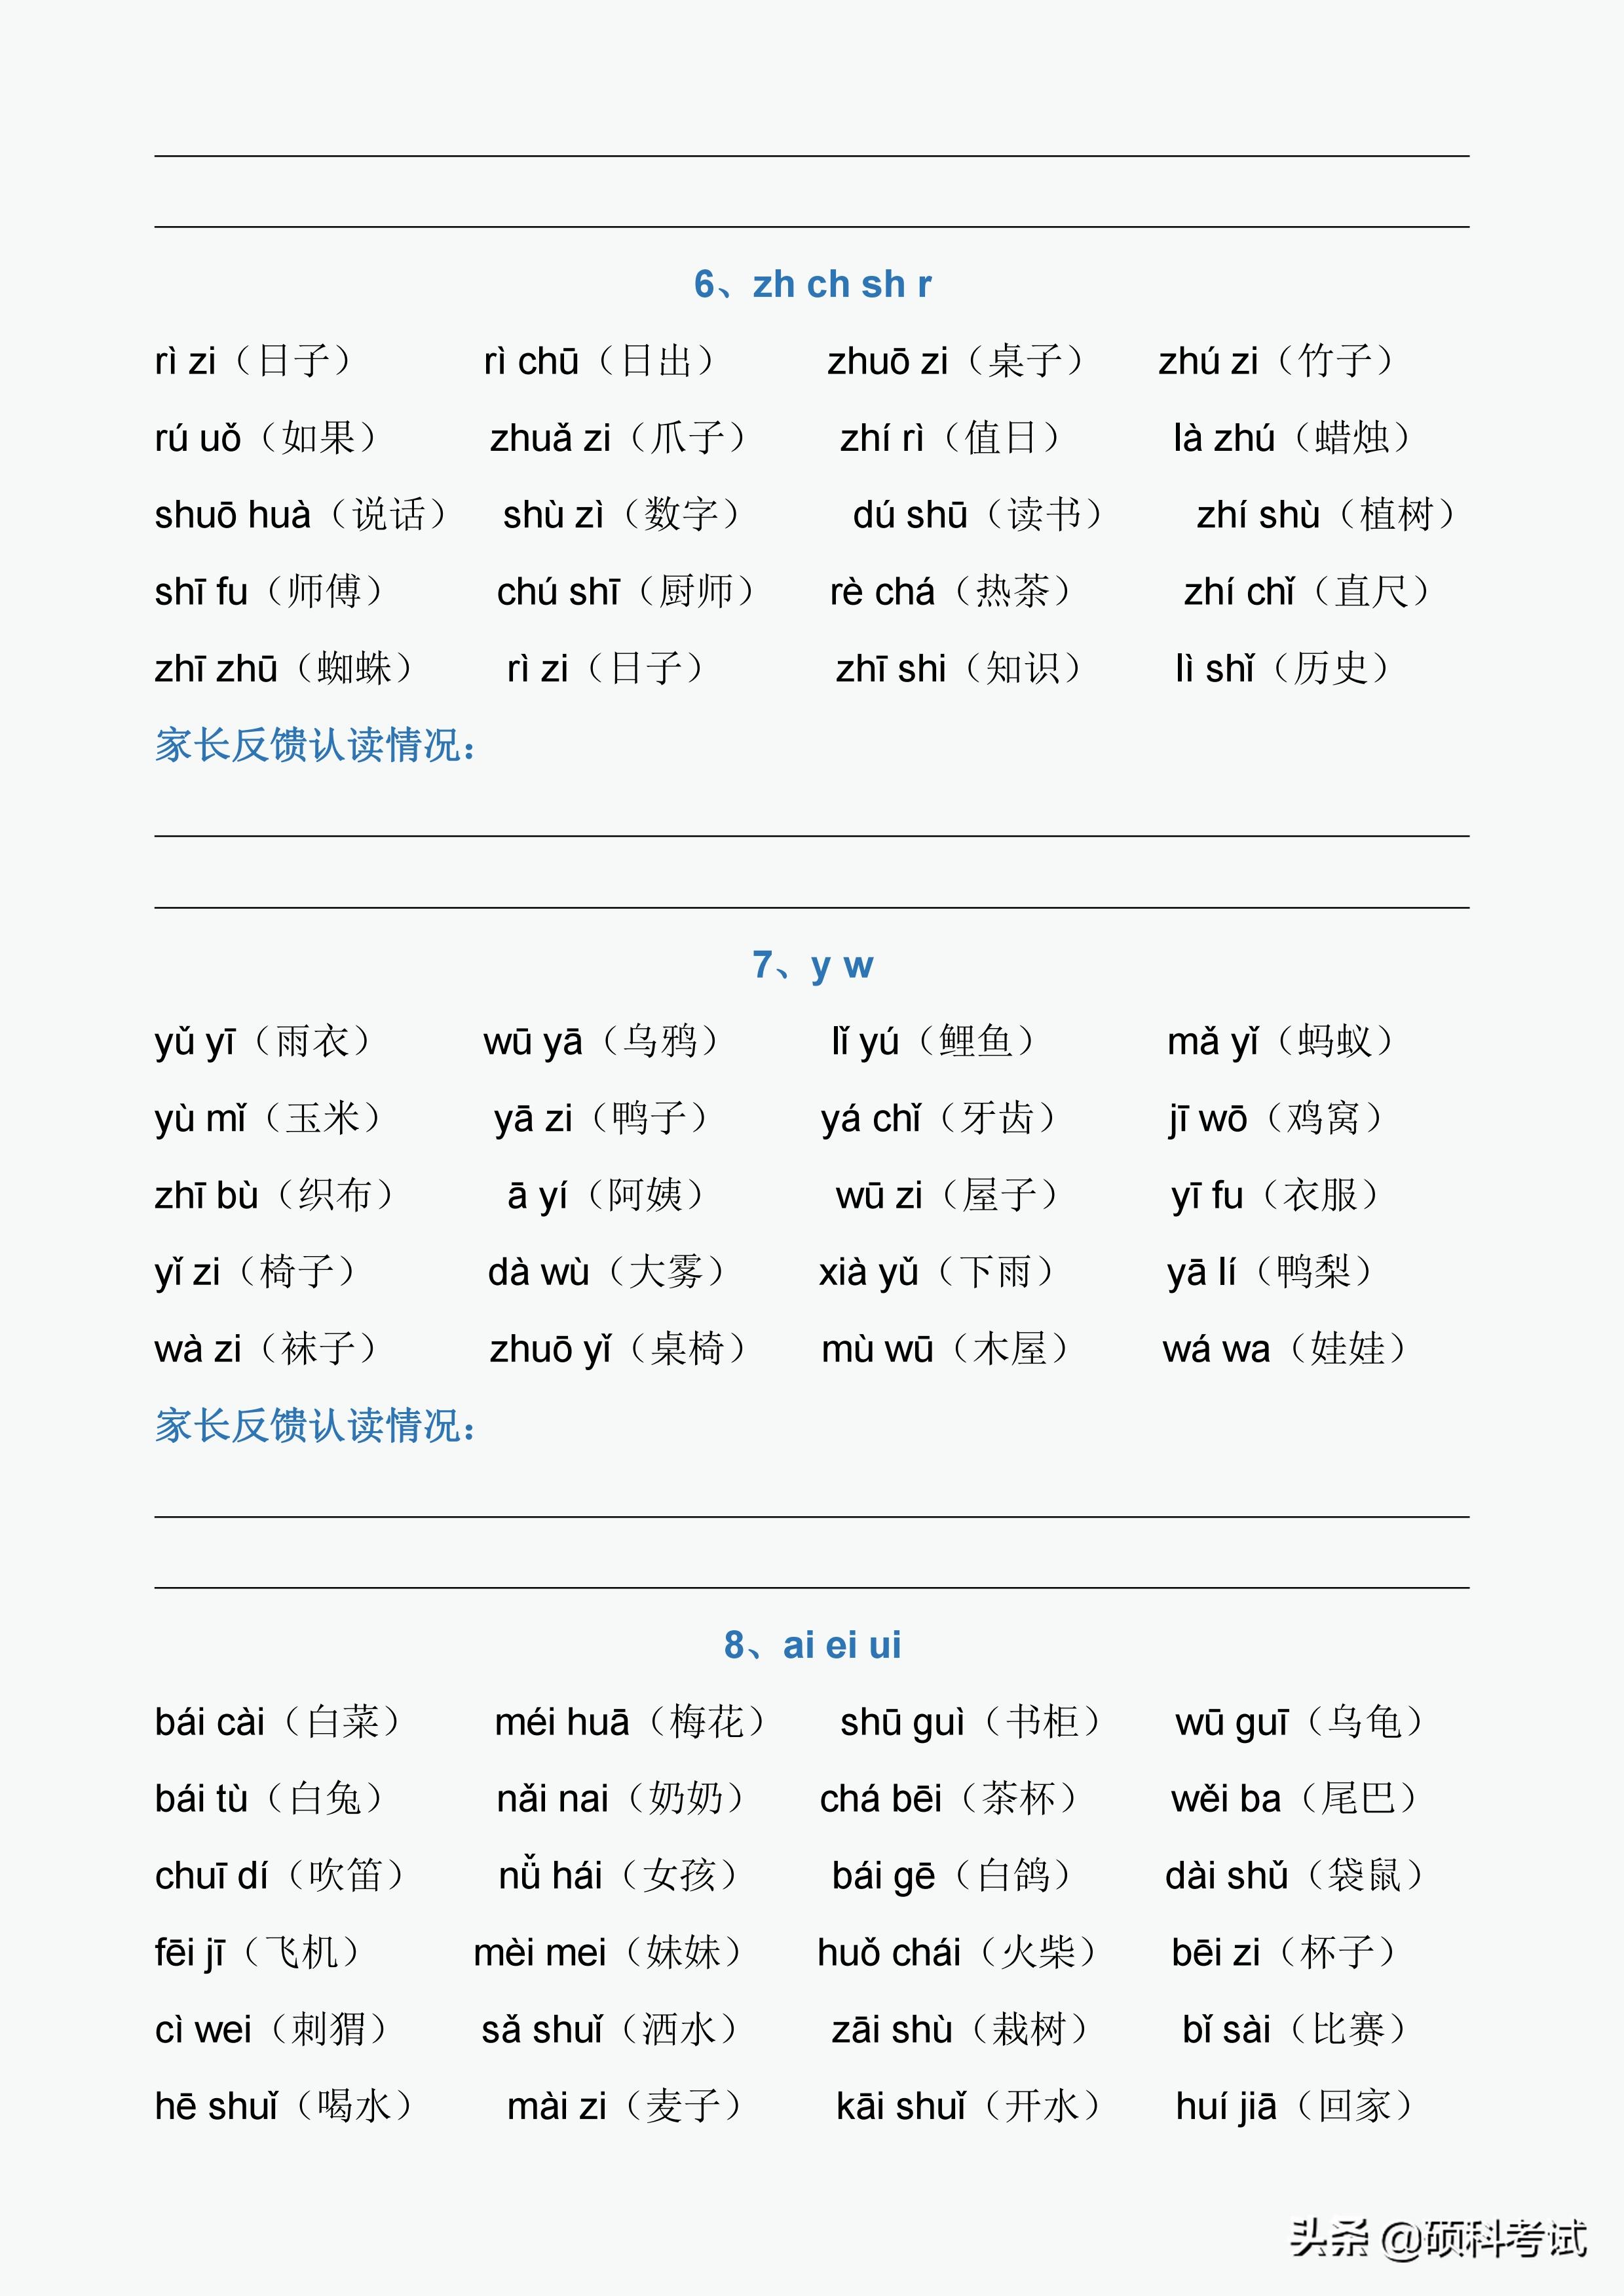 学拼音最简单最快的方法 拼音声母表和韵母表